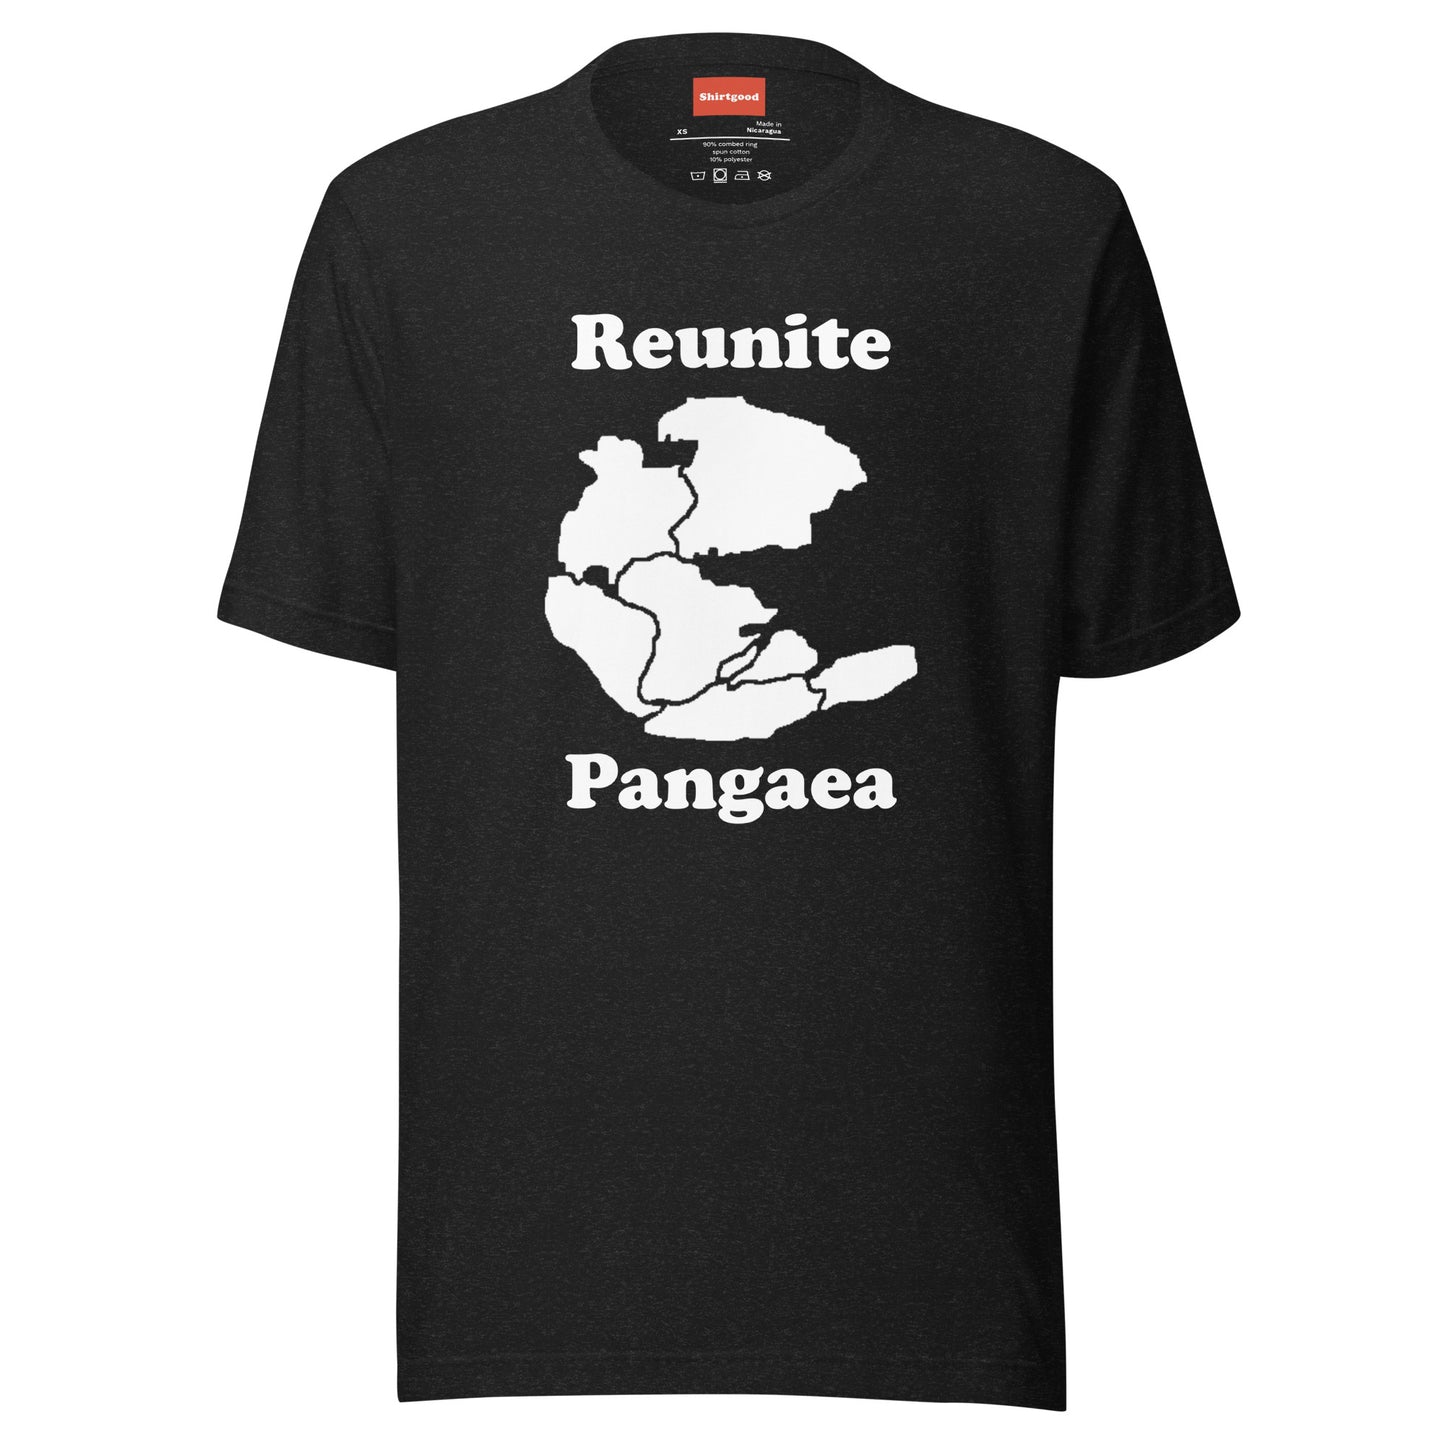 Reunite Pangaea